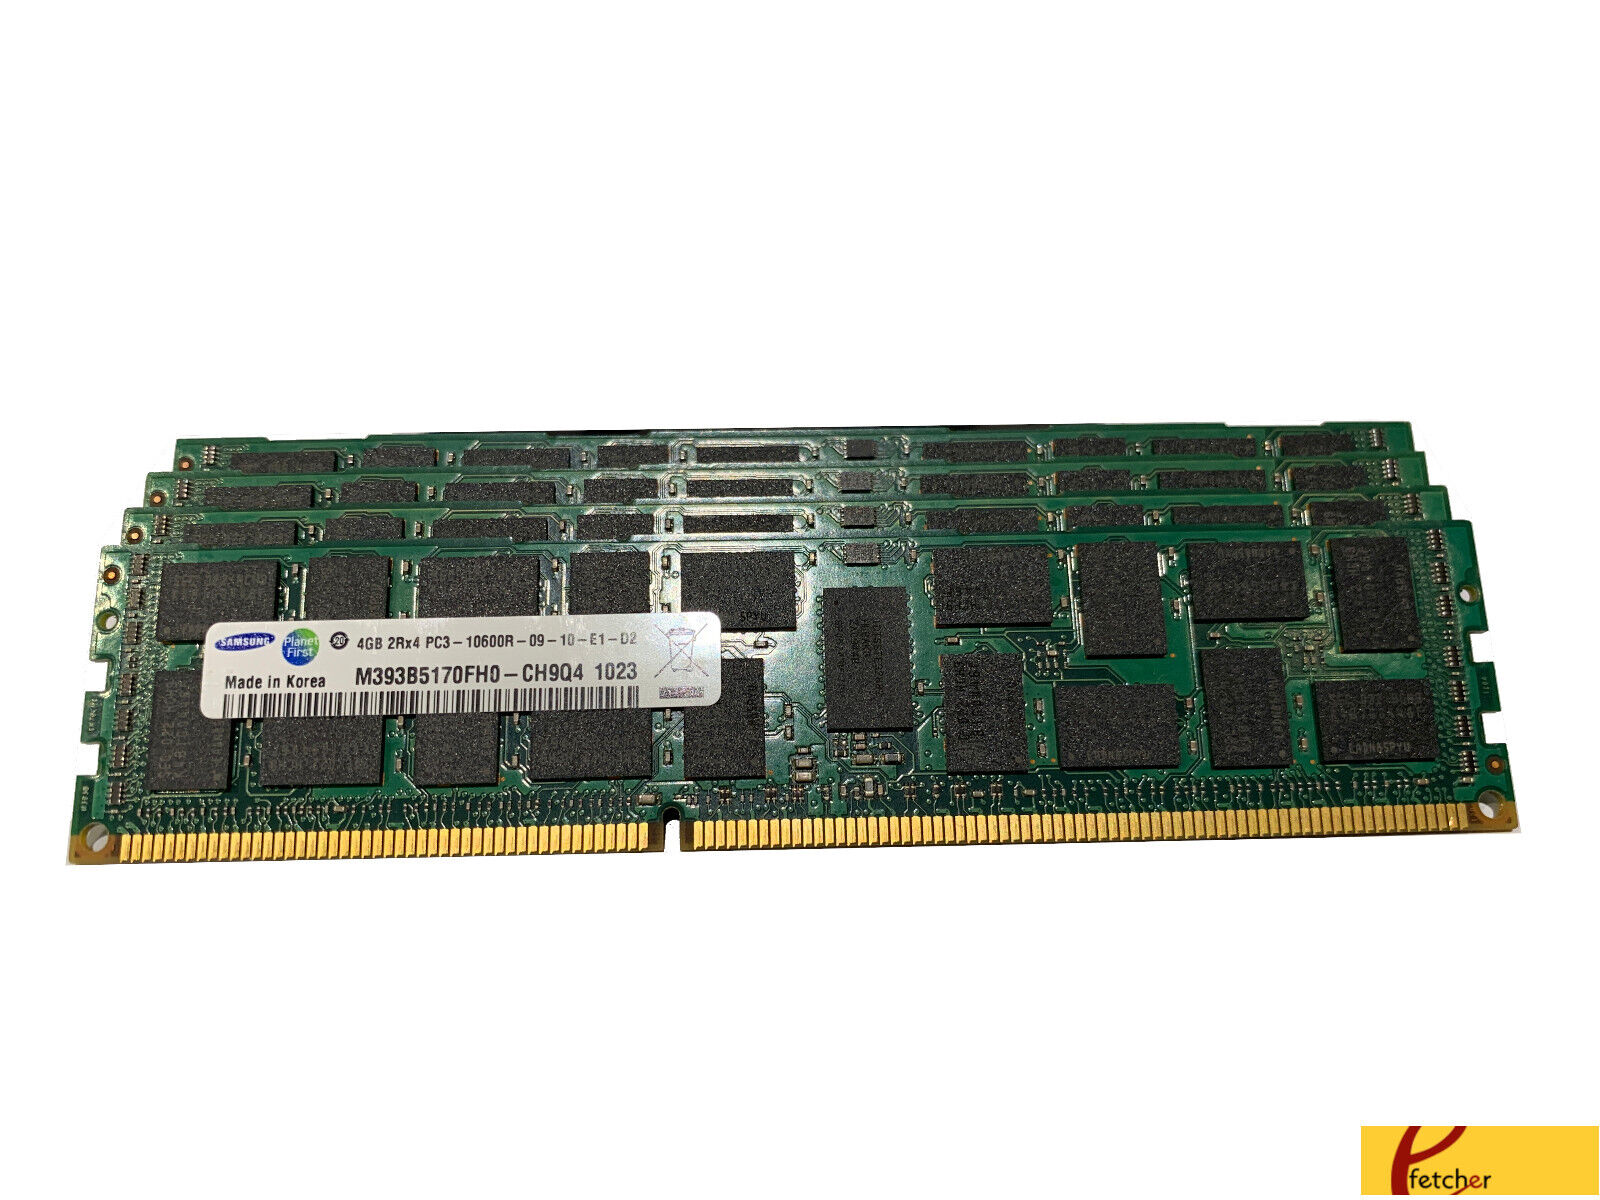 24GB (6X4GB) DDR3 ECC REG. MEMORY FOR DELL PRECISION WORKSTATION T5500, T7500